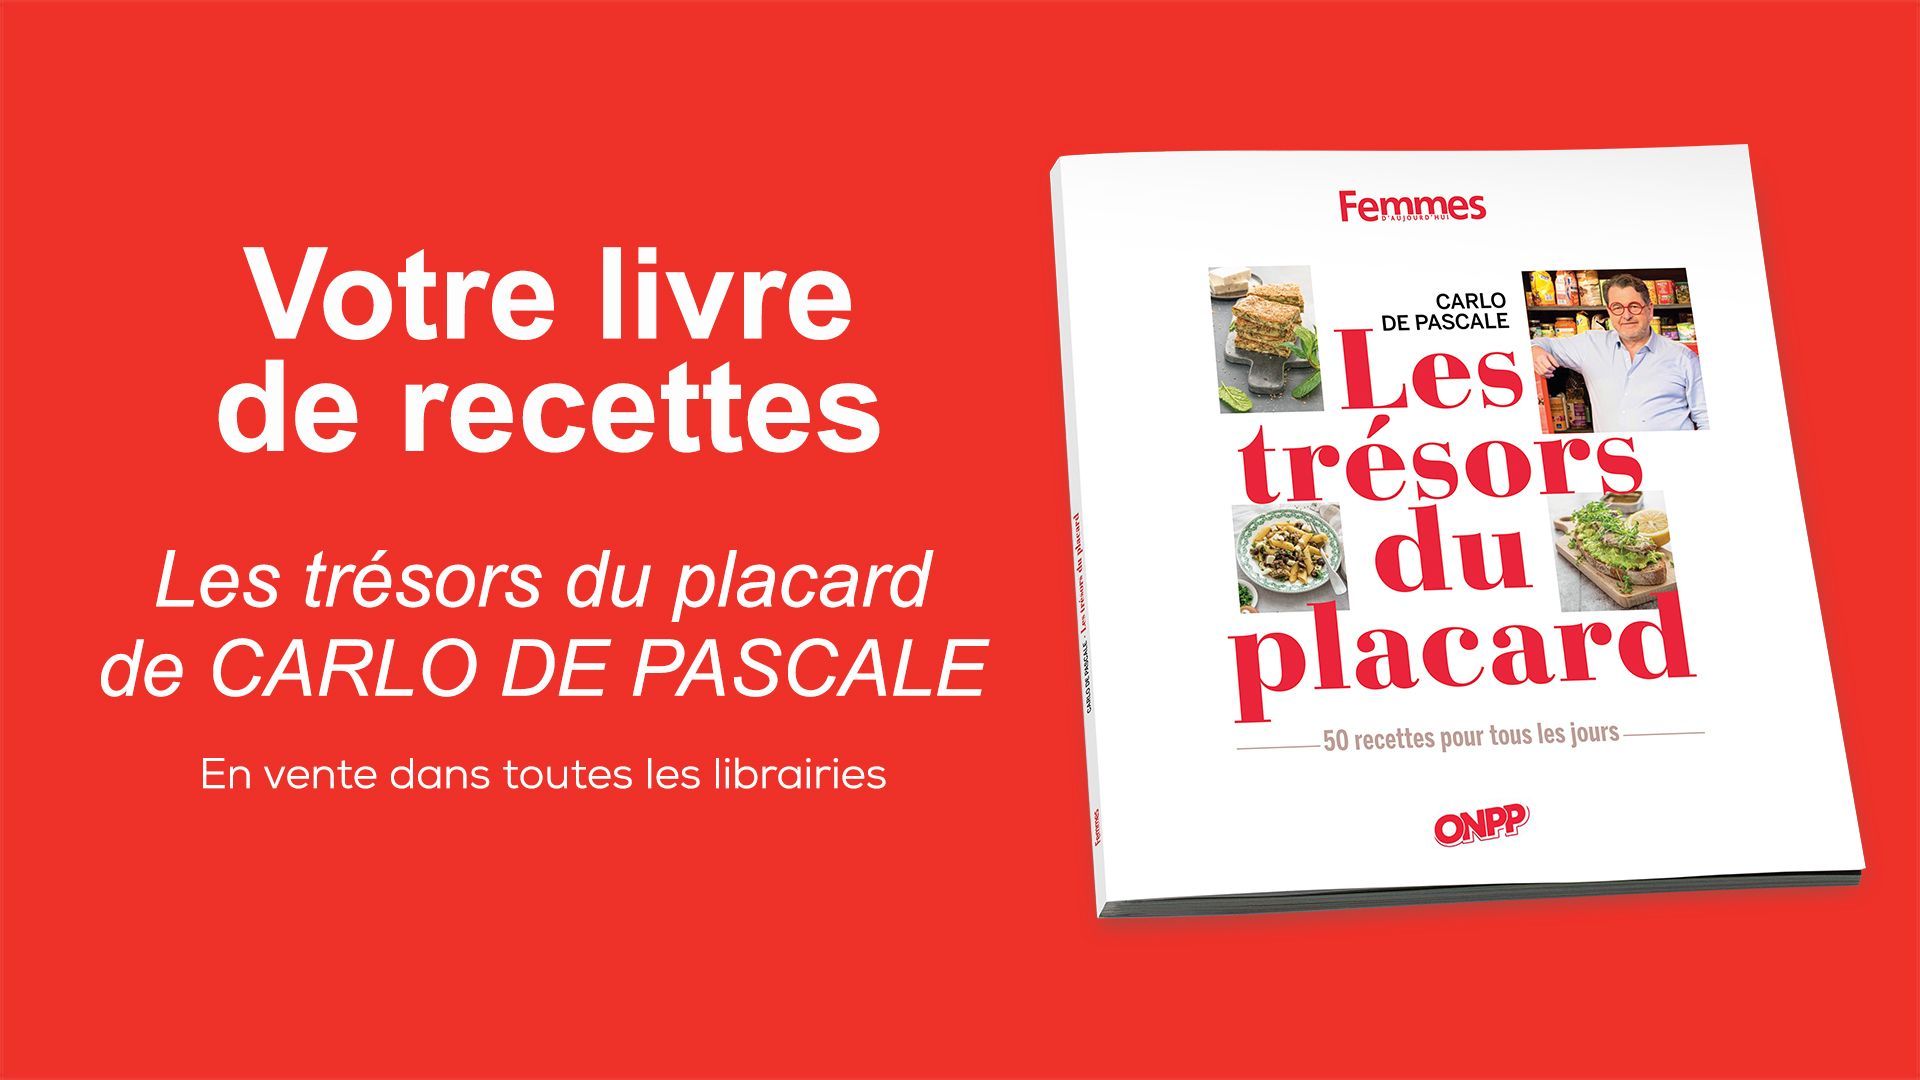 "Les trésors du placard", livre de recettes de Carlo de Pascal.